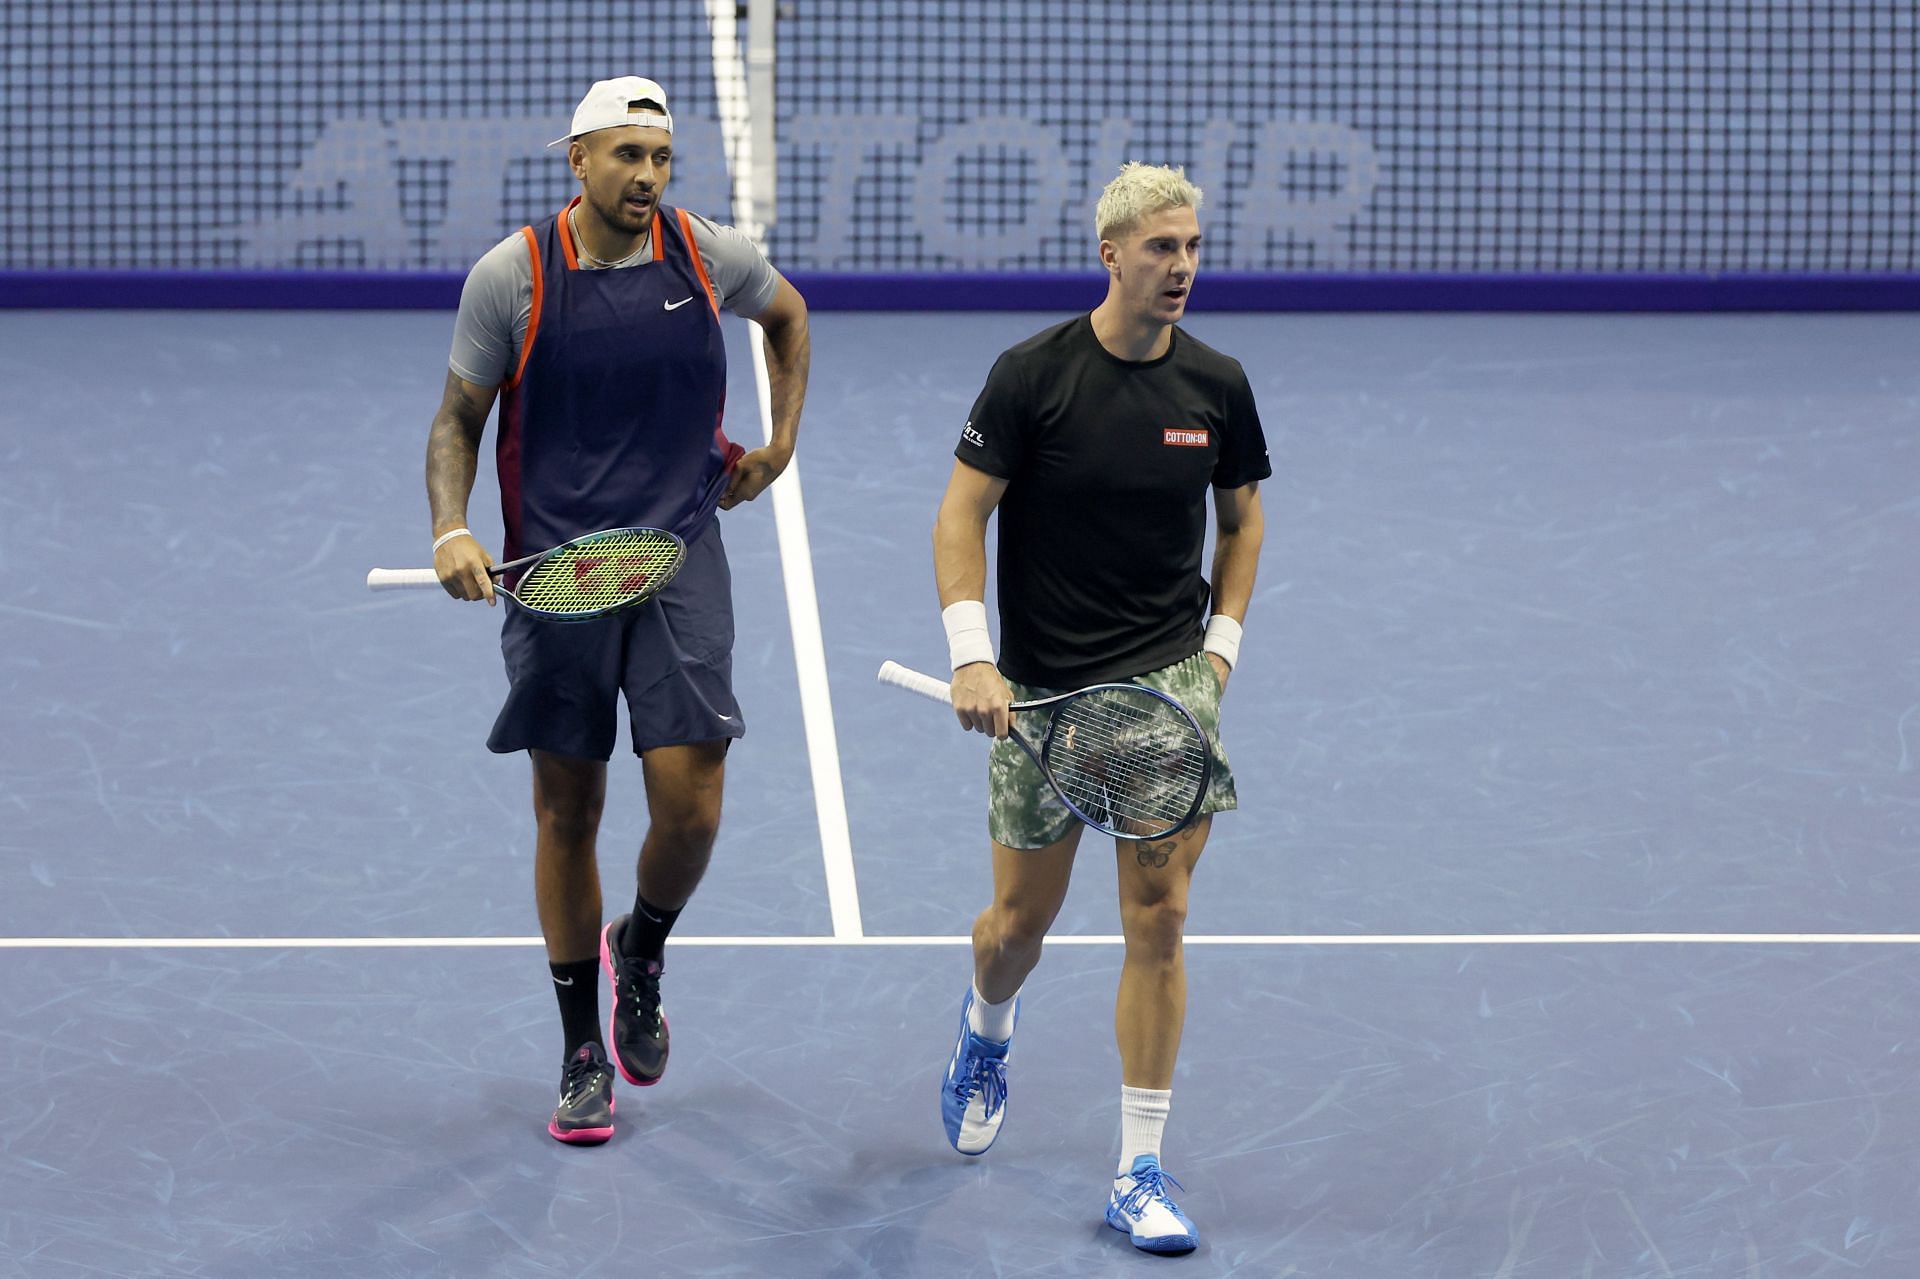 Nick Kyrgios and Thanasi Kokkinakis in action at 2022 Nitto ATP Finals.